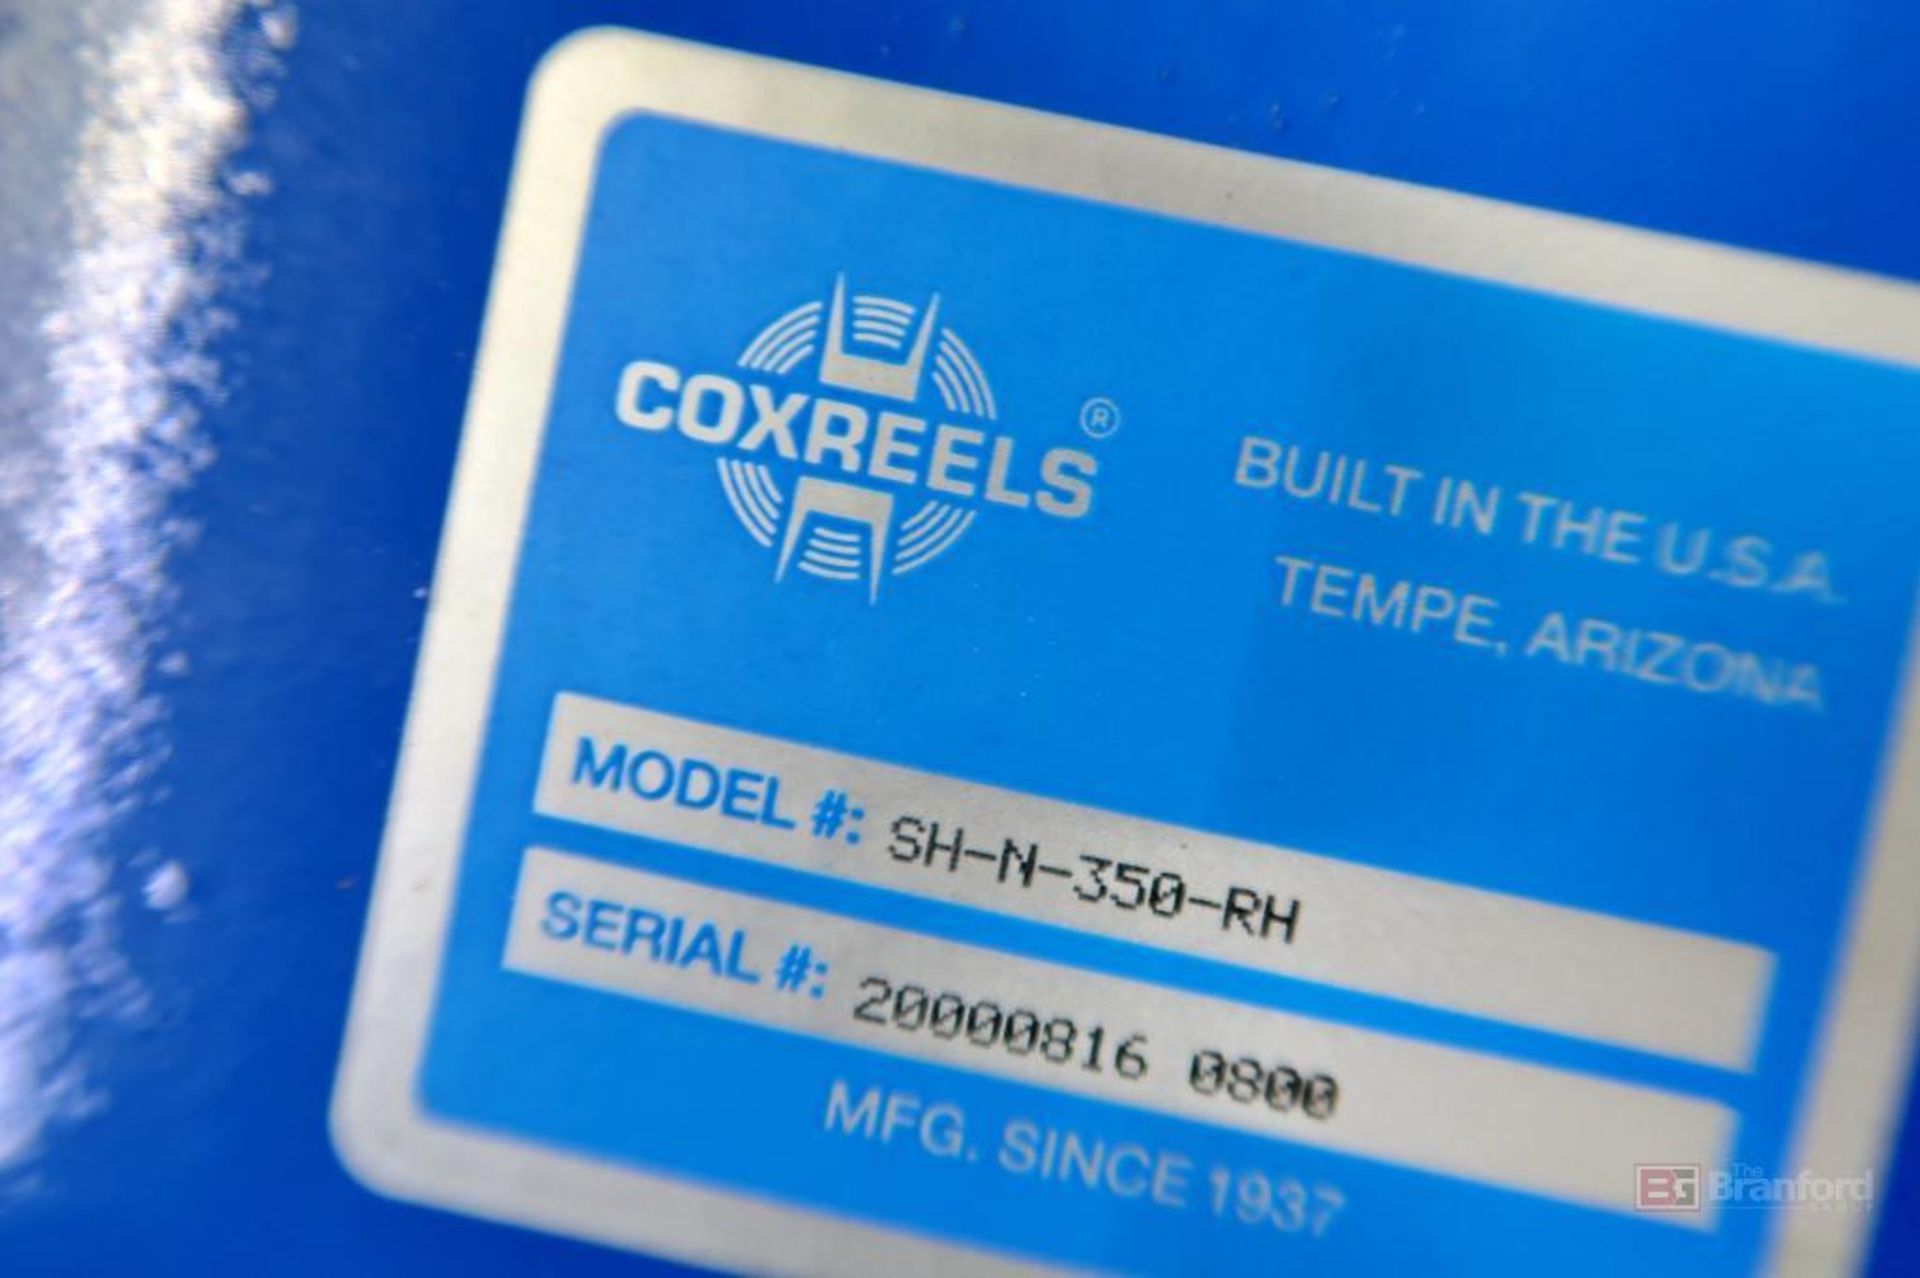 Coxreels Air Hose Reel Model SH-N-350-RH - Image 2 of 2